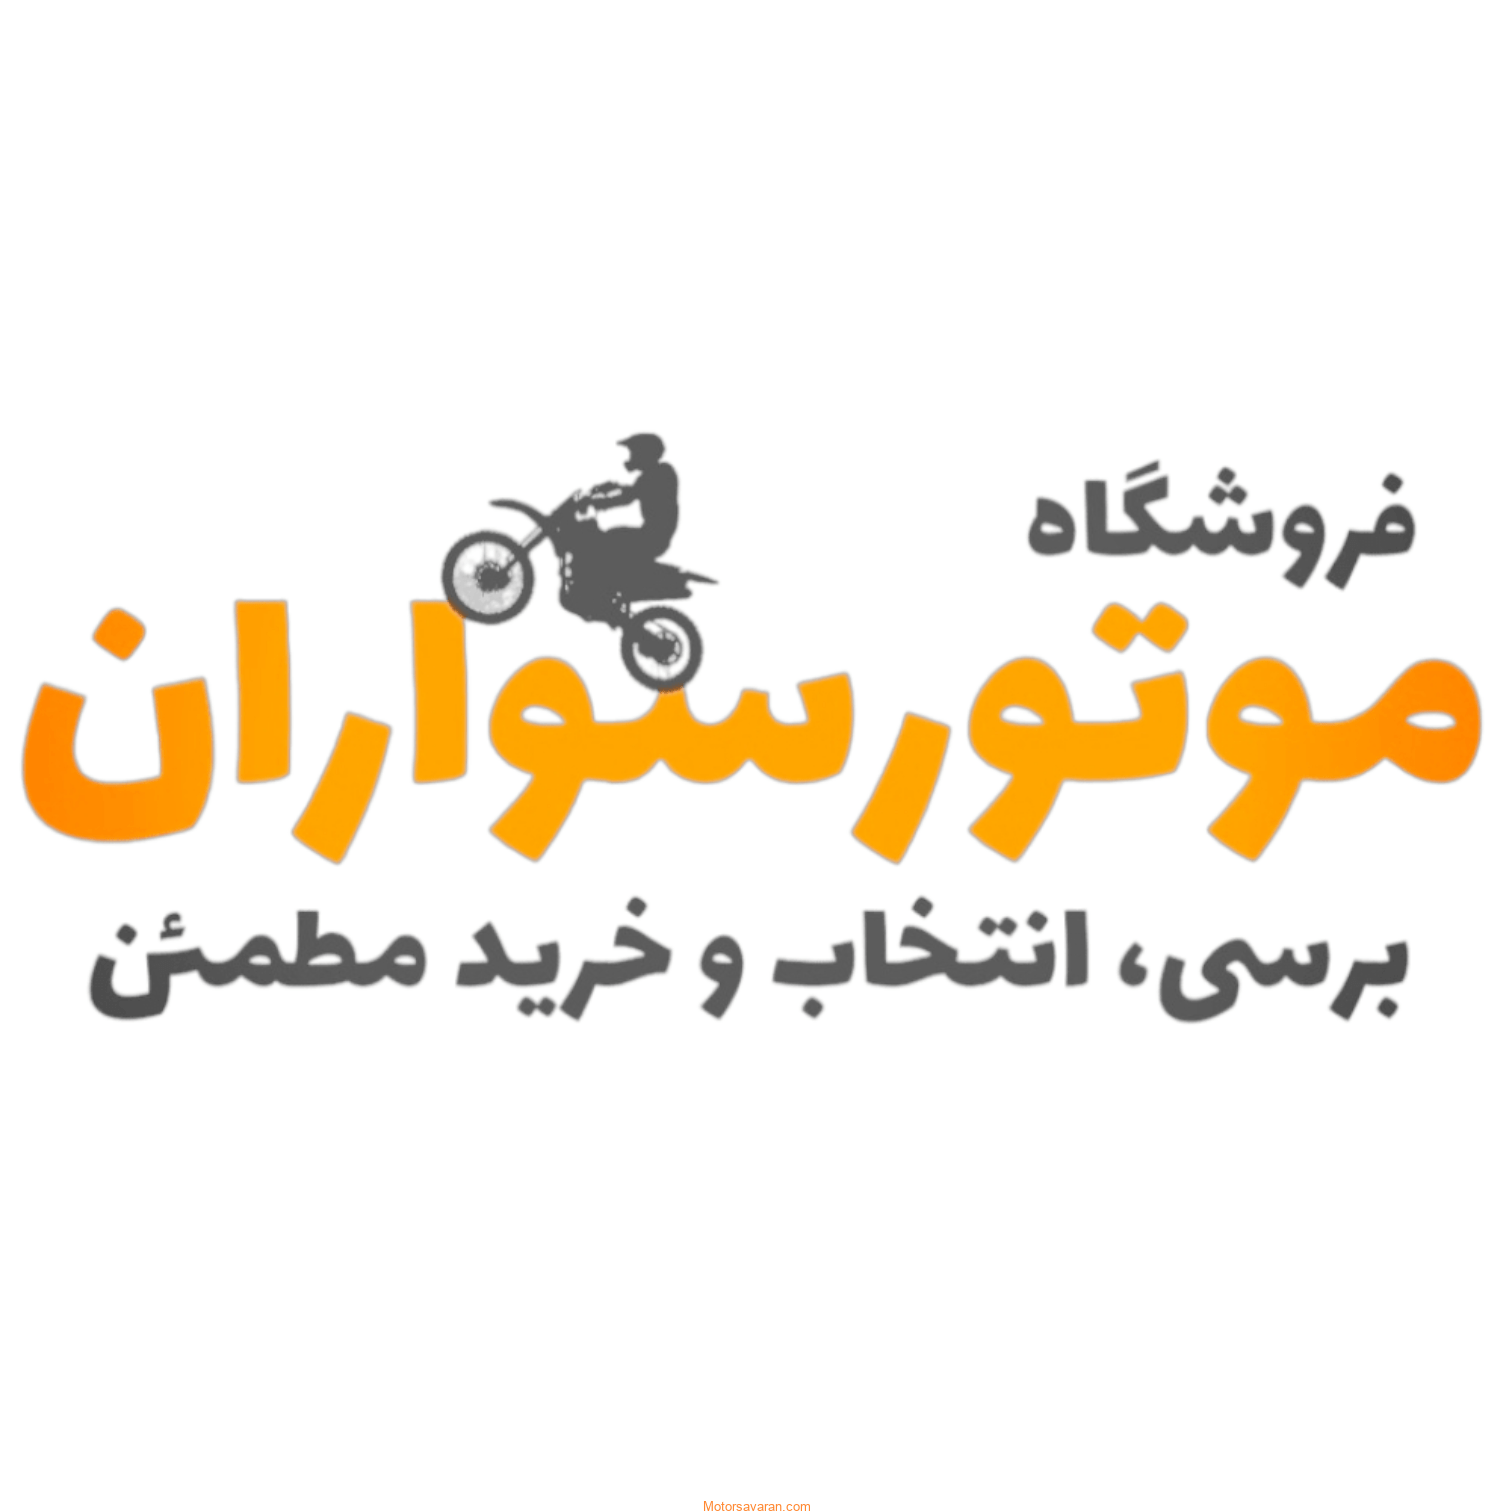 کلاه کاسکت موتور سیکلت فروشگاه موتور سواران قیمت و خرید کلاه ایمنی ارزان و جدید در تهران